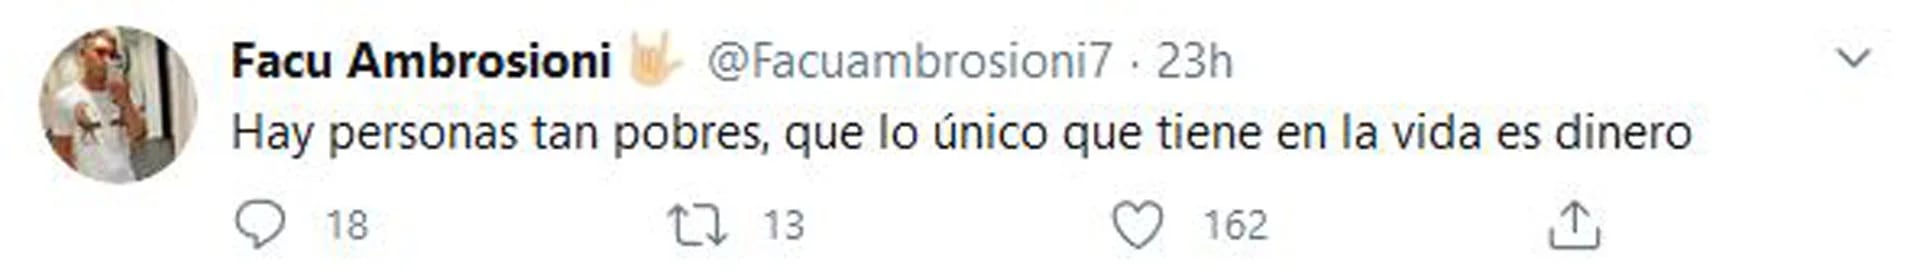 Facundo Ambrosioni publicó un mensaje sin mencionar a More Rial (Foto: Twitter)